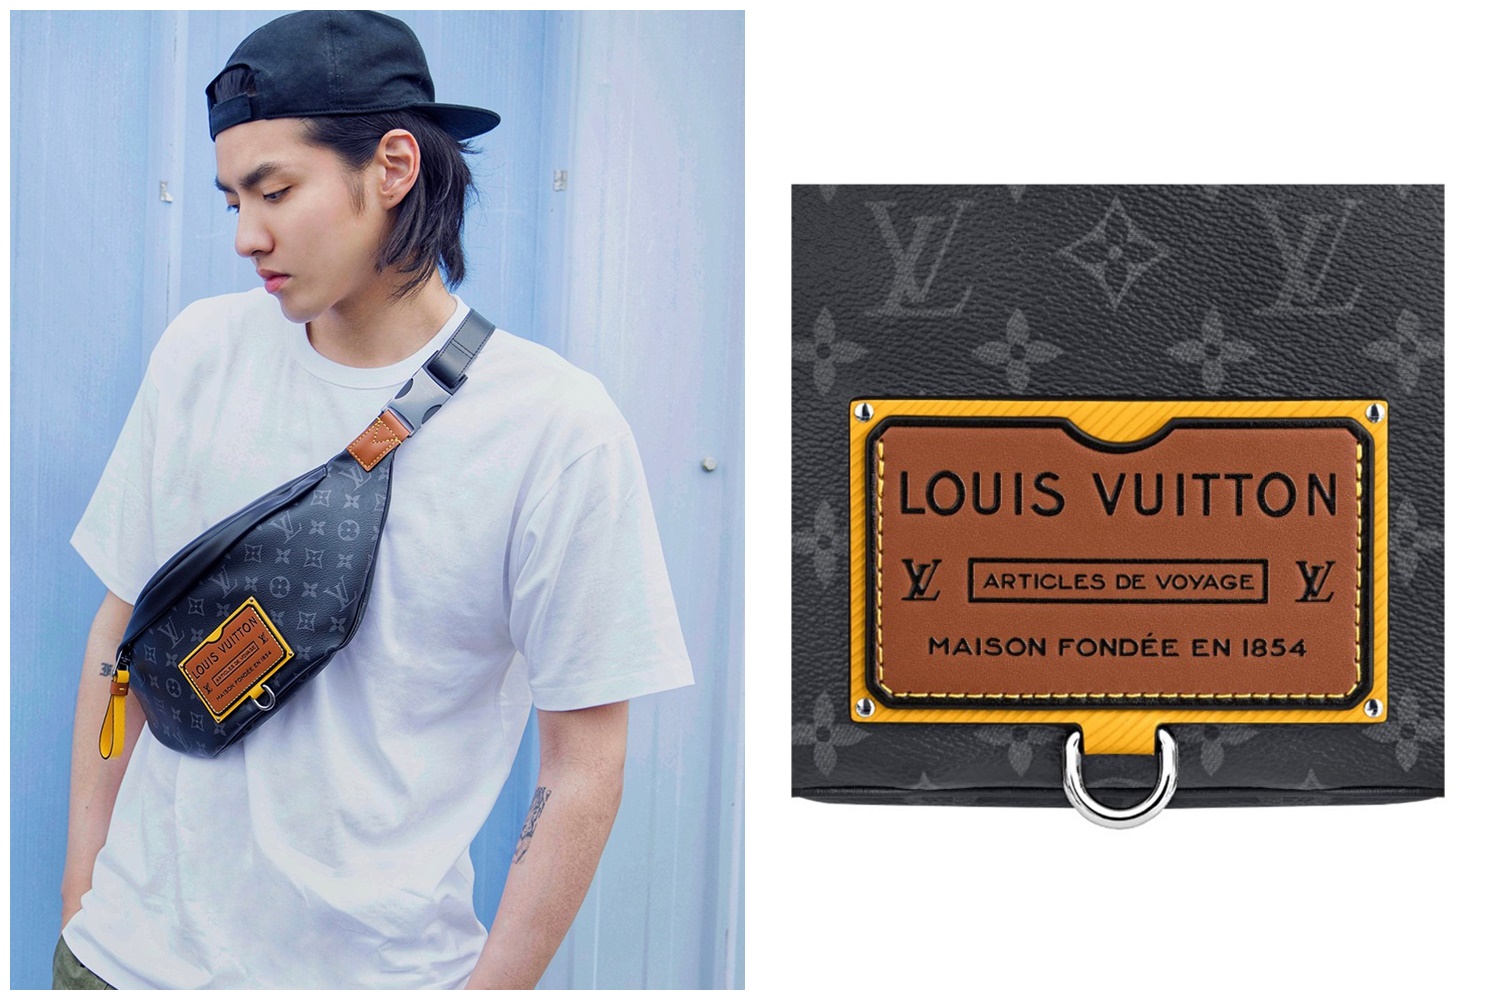 Đại sứ thương hiệu Louis Vuitton mới nhất thuộc về HYEIN  Em út nhóm nhạc  NEWJEANS  StyleRepublikcom  Thời Trang sáng tạo và kinh doanh